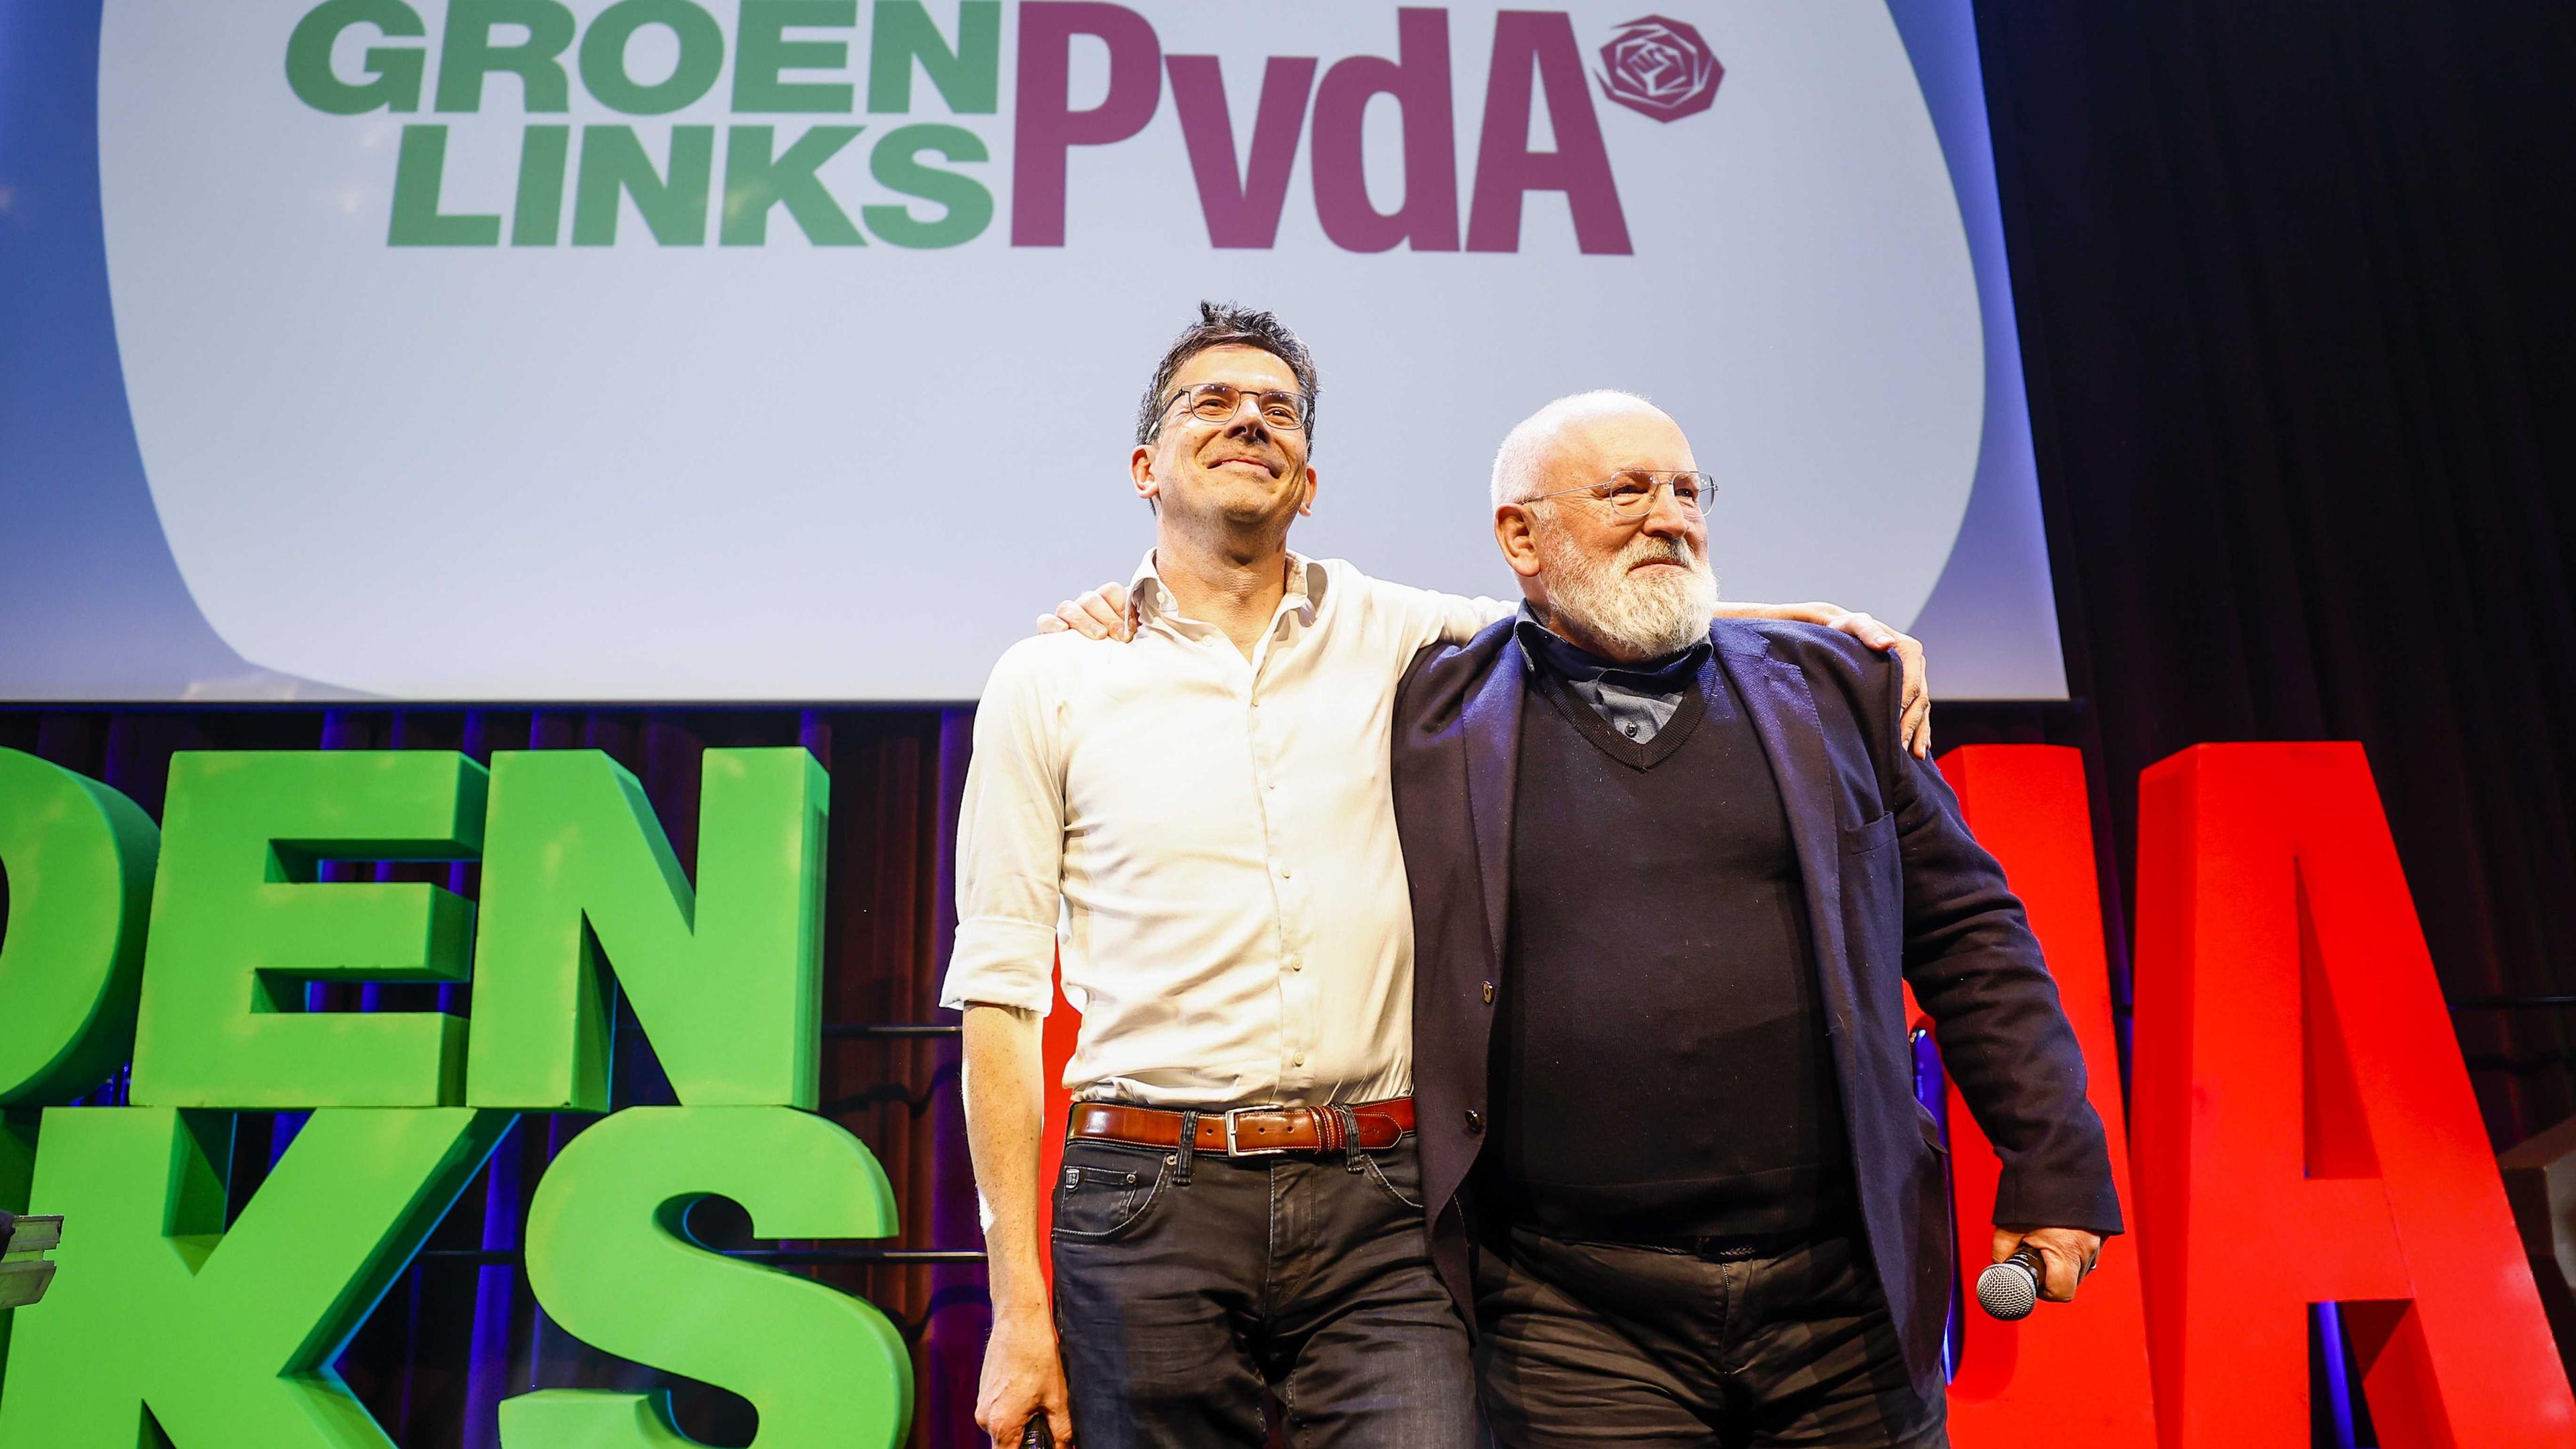 Eickhout und Timmermans vom führenden rot-grünen Bündnis auf einer Bühne nach der Wahl.